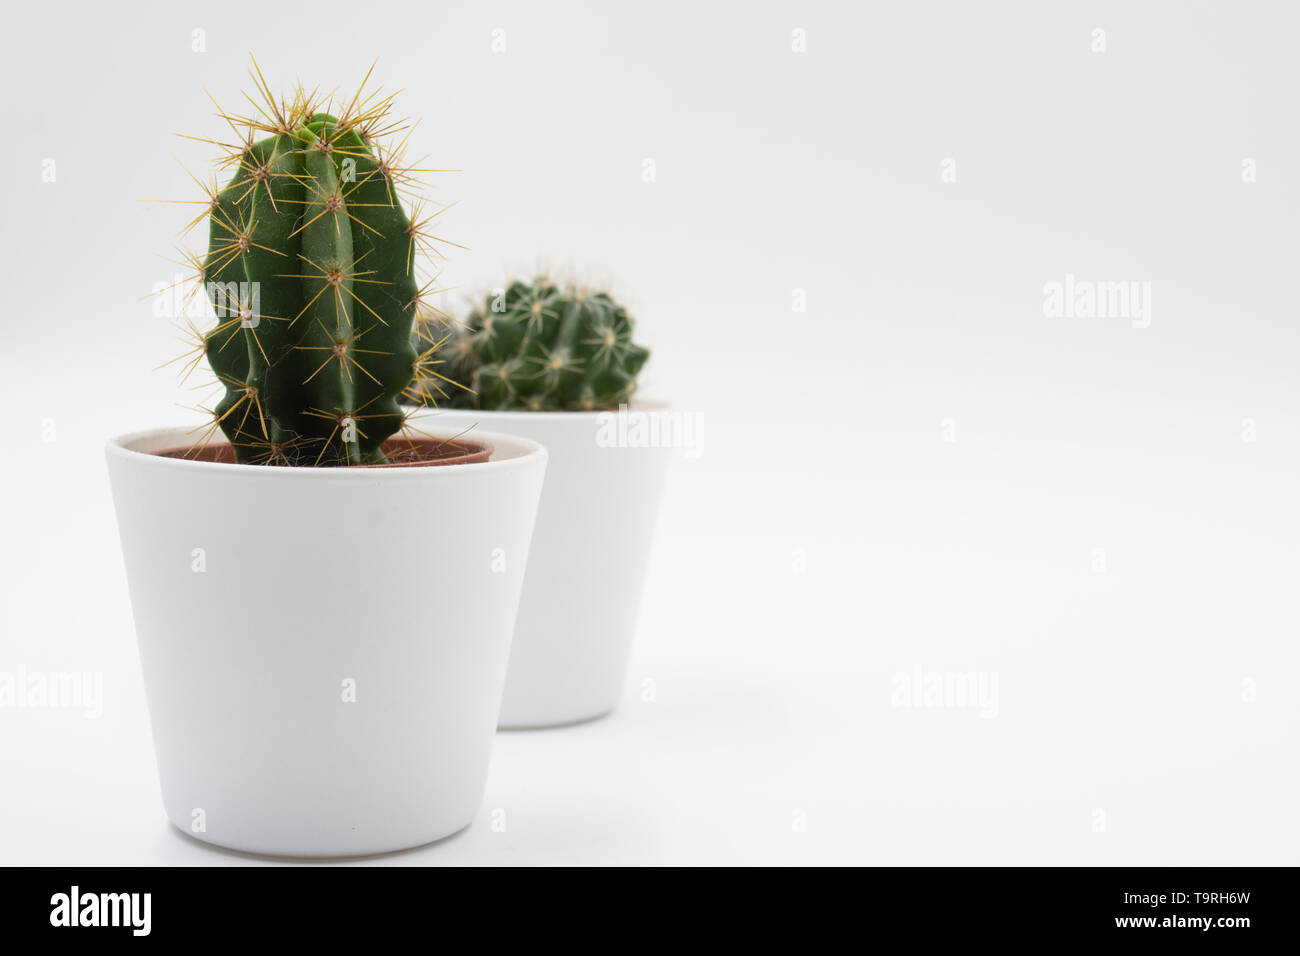 Fond blanc minimaliste de petit cactus. Plantes de relaxation. Espace calme et reposant. Détendez-vous en arrière-plan.tranquillité et paix. Aride Banque D'Images